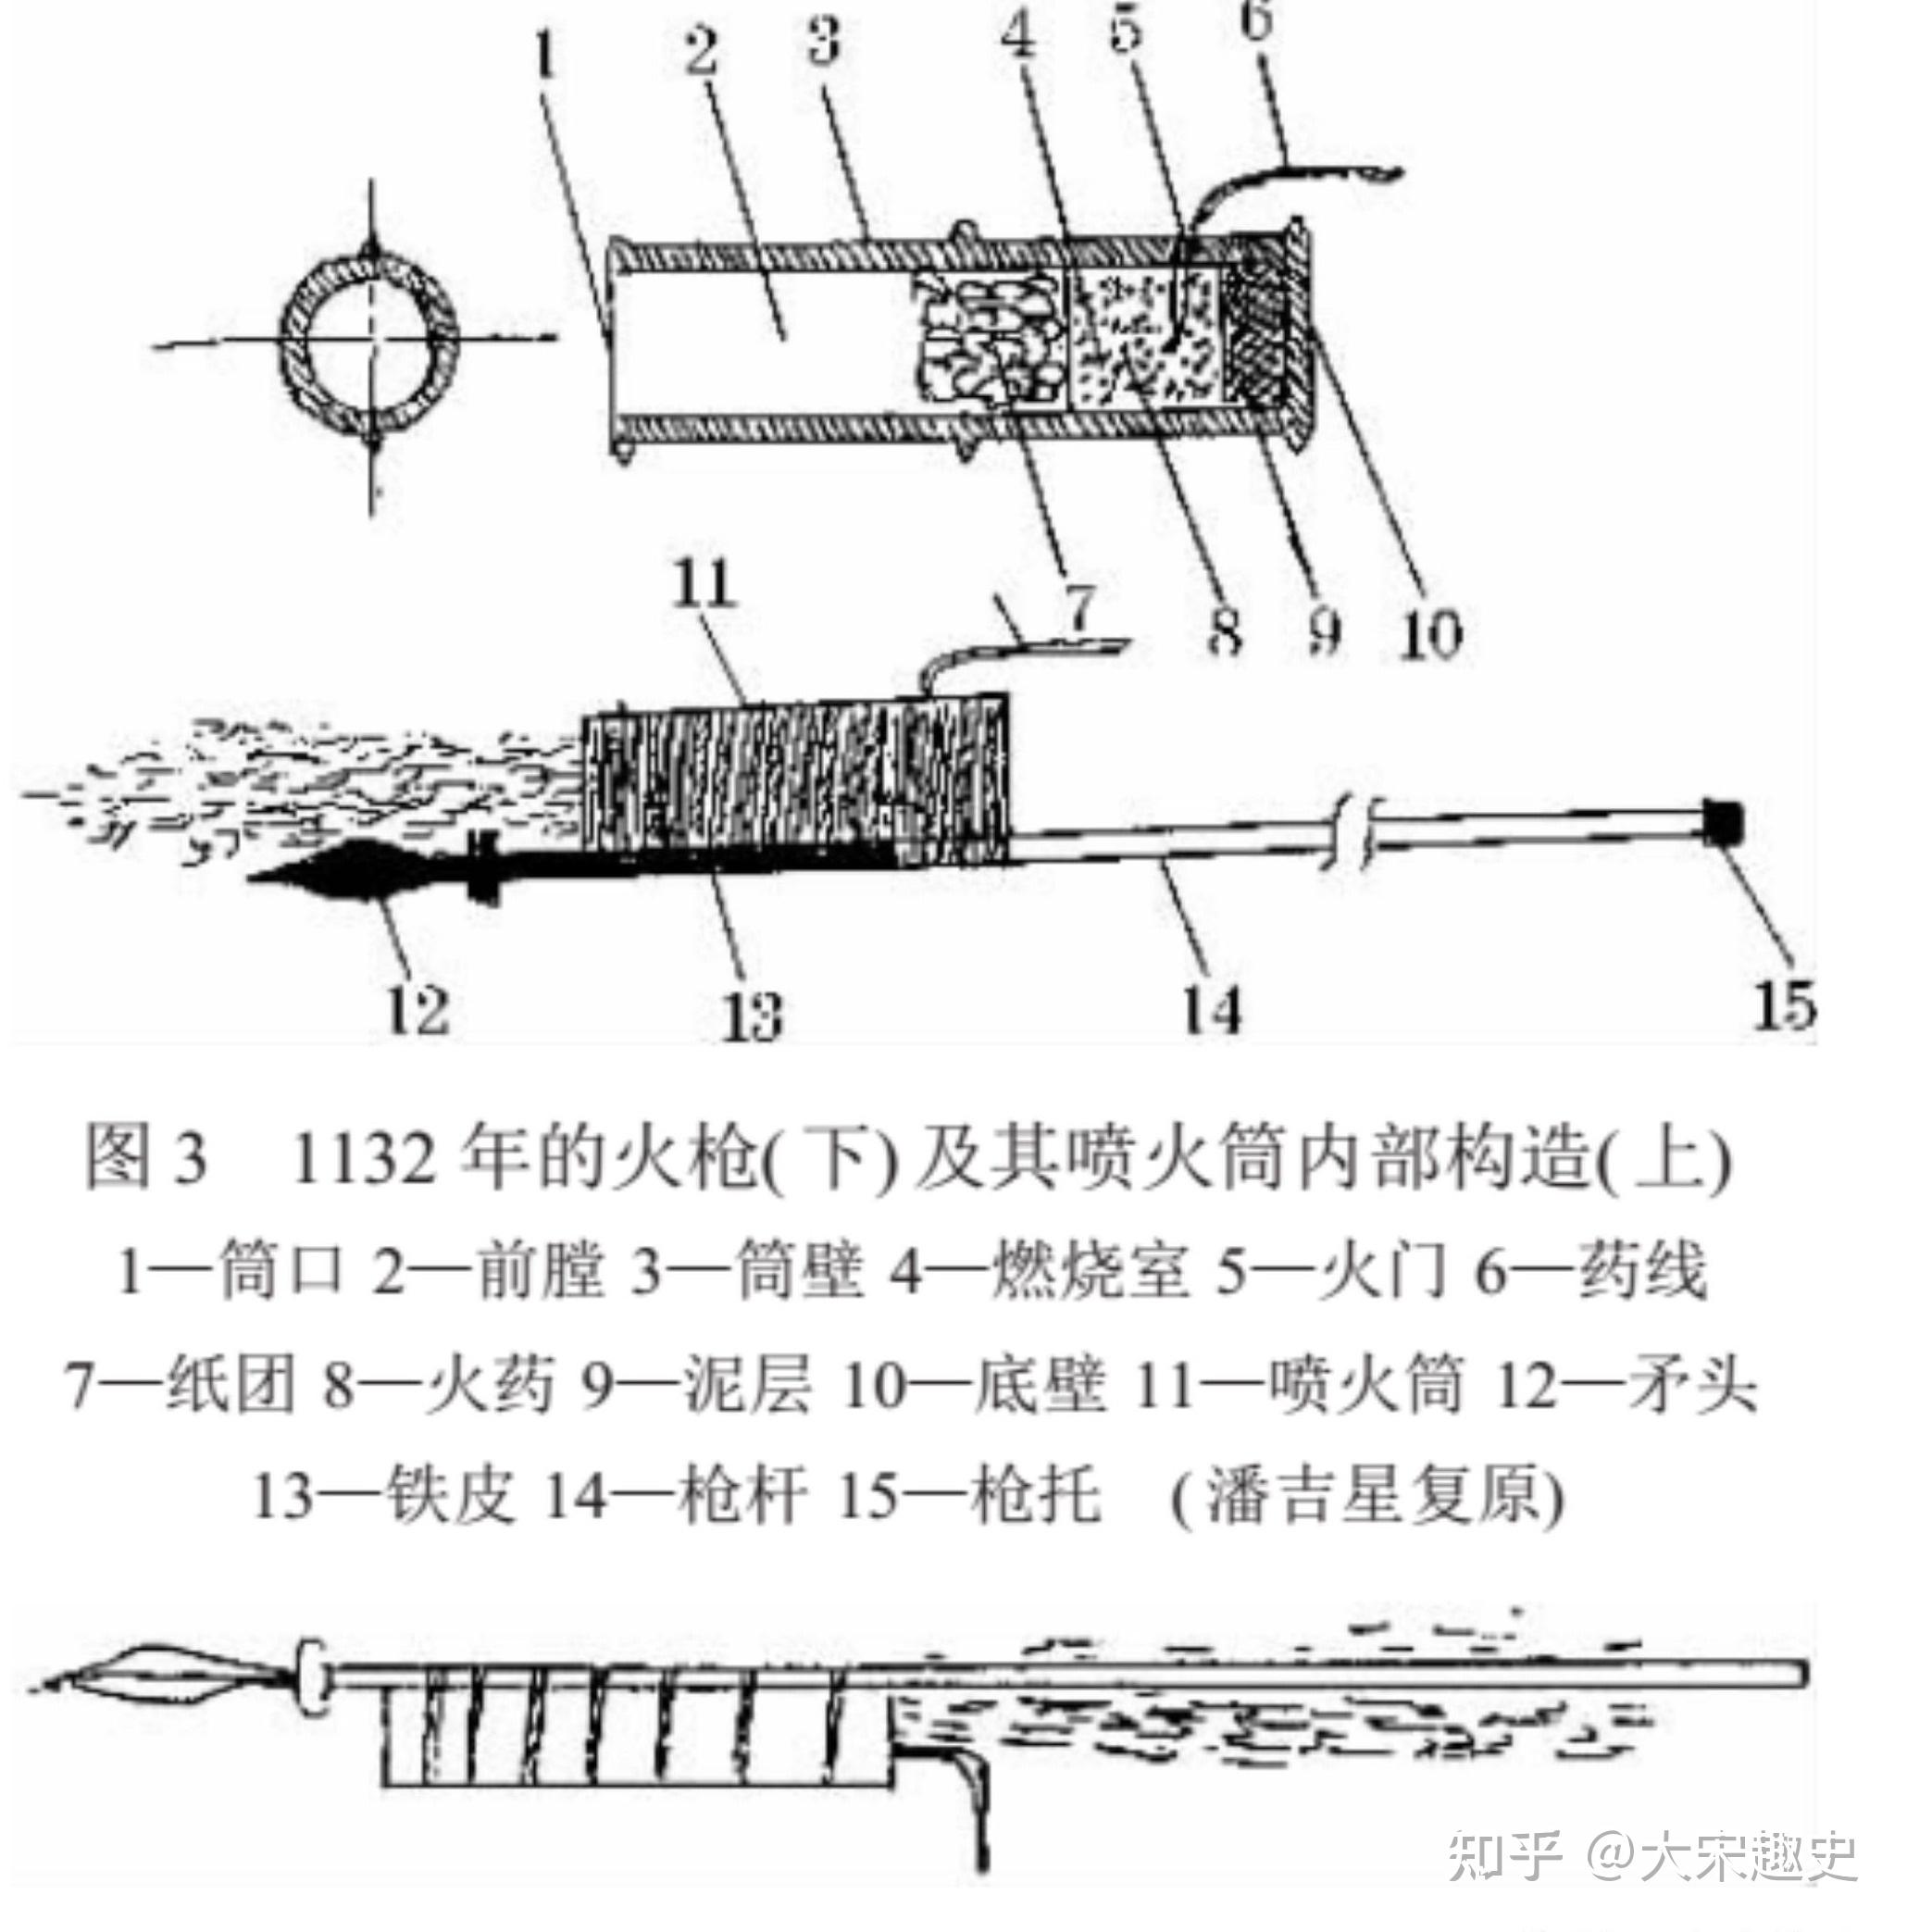 一百多年后,宋理宗开庆元年(1259年),宋人又制造出另一种叫突火枪的